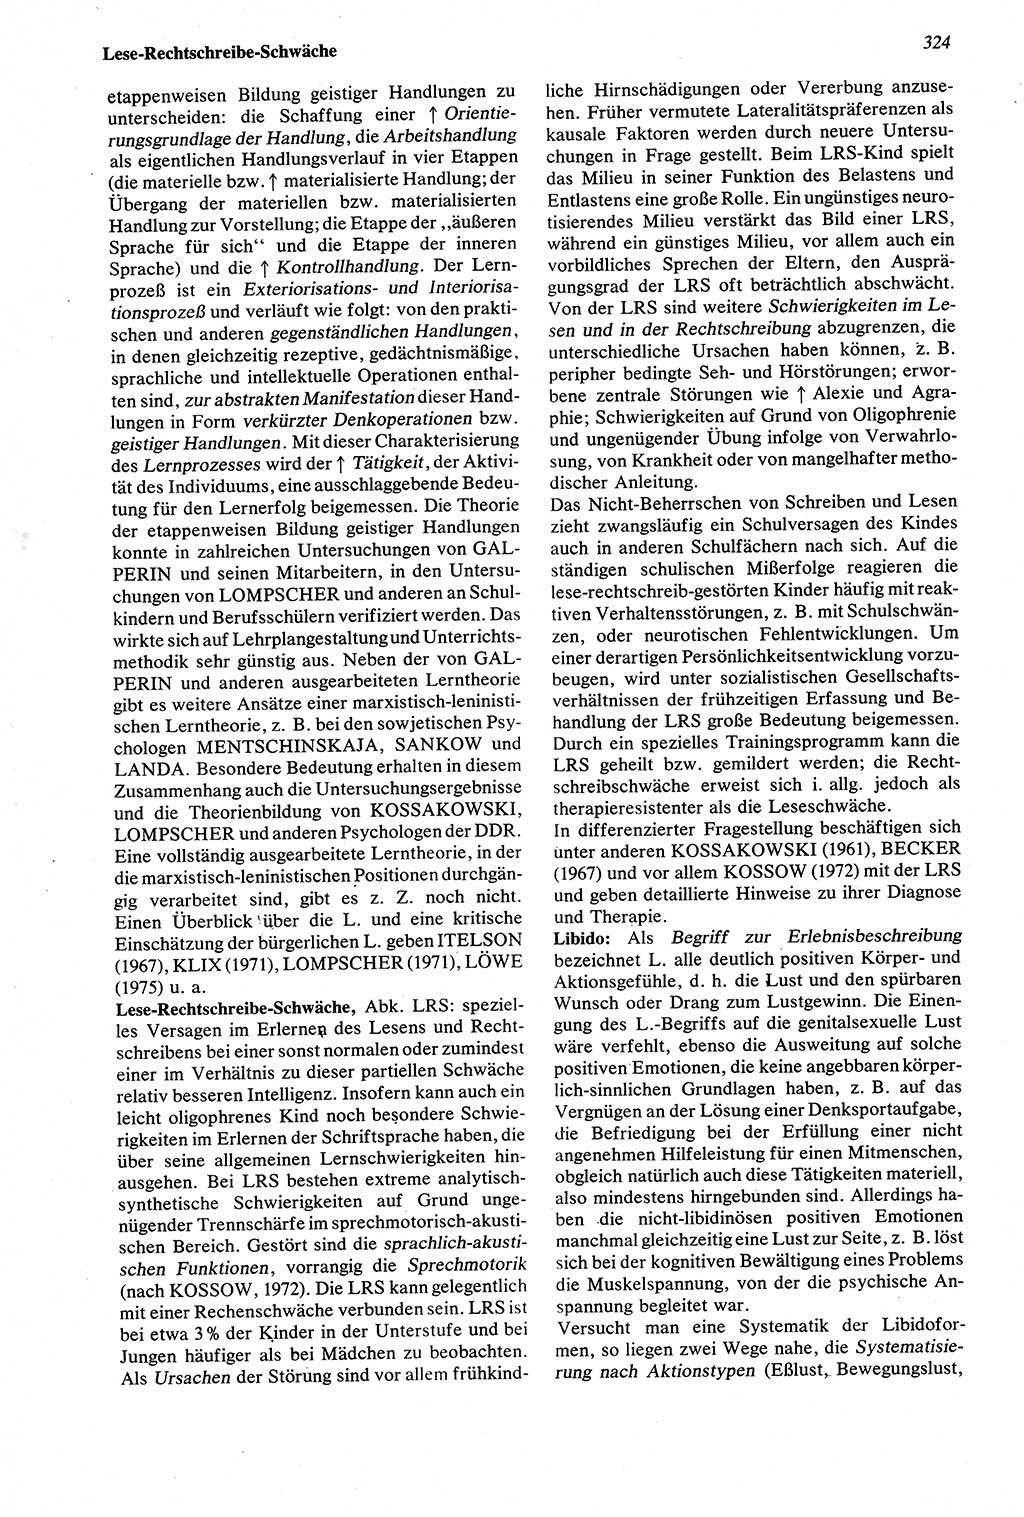 Wörterbuch der Psychologie [Deutsche Demokratische Republik (DDR)] 1976, Seite 324 (Wb. Psych. DDR 1976, S. 324)